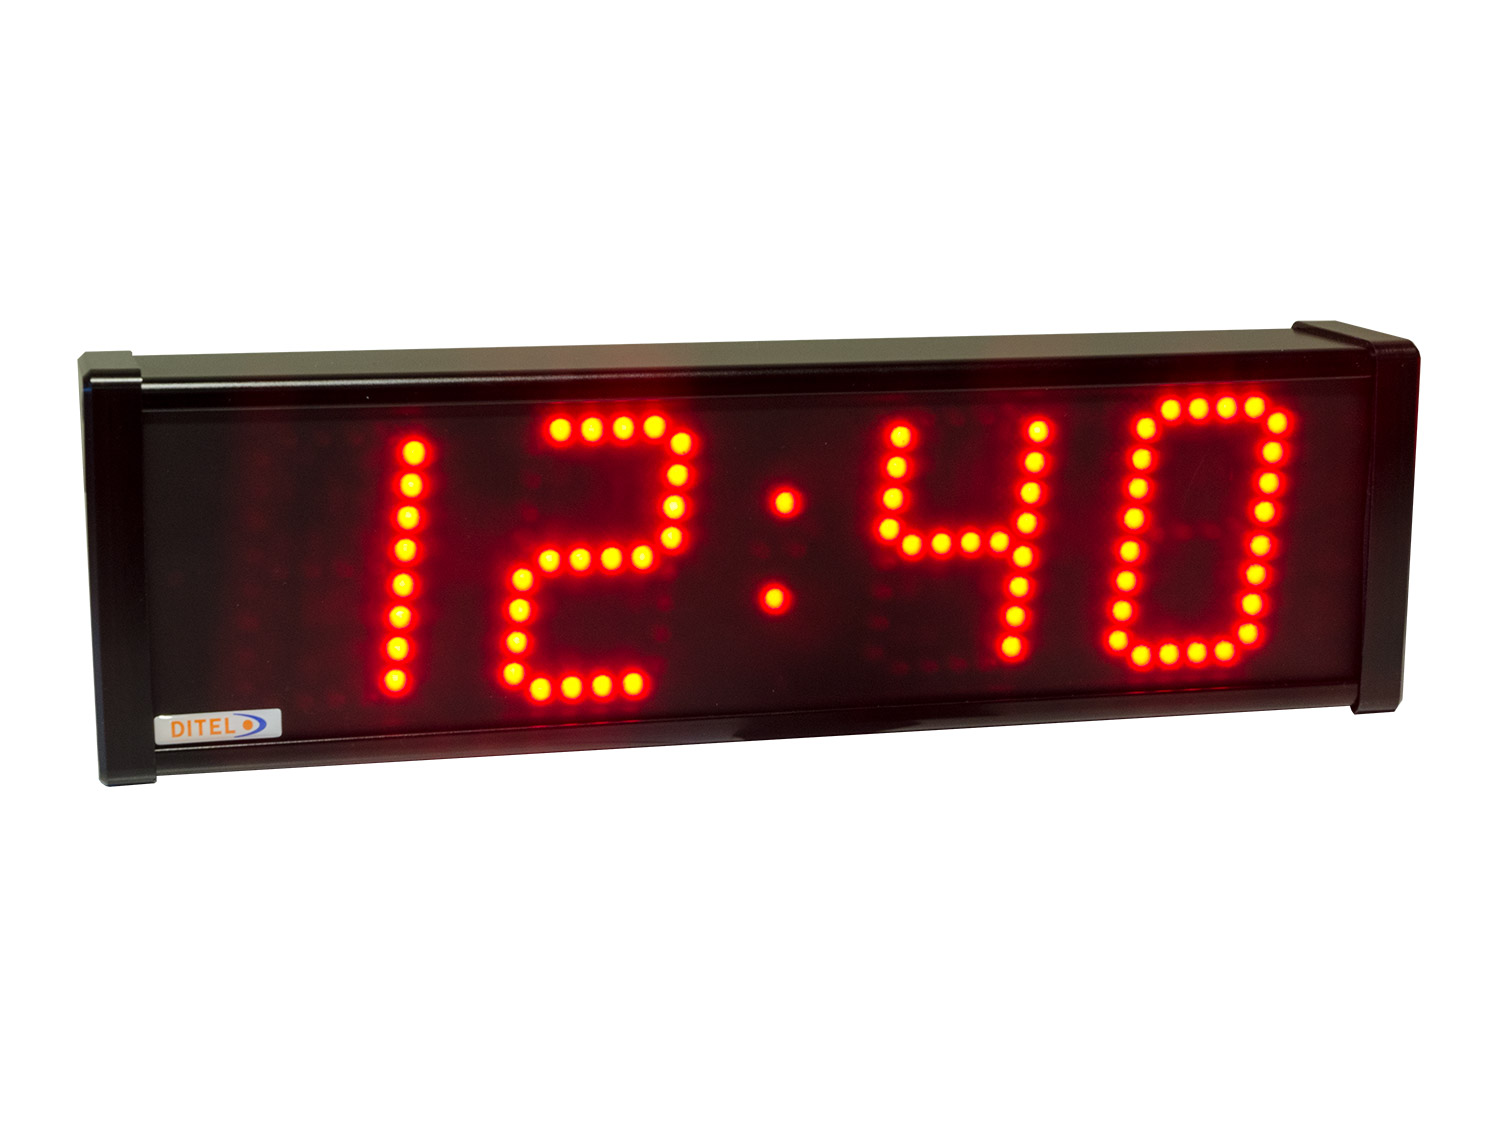 Reloj, calendario, cronómetro y termómetro con altura de carácter 80mm